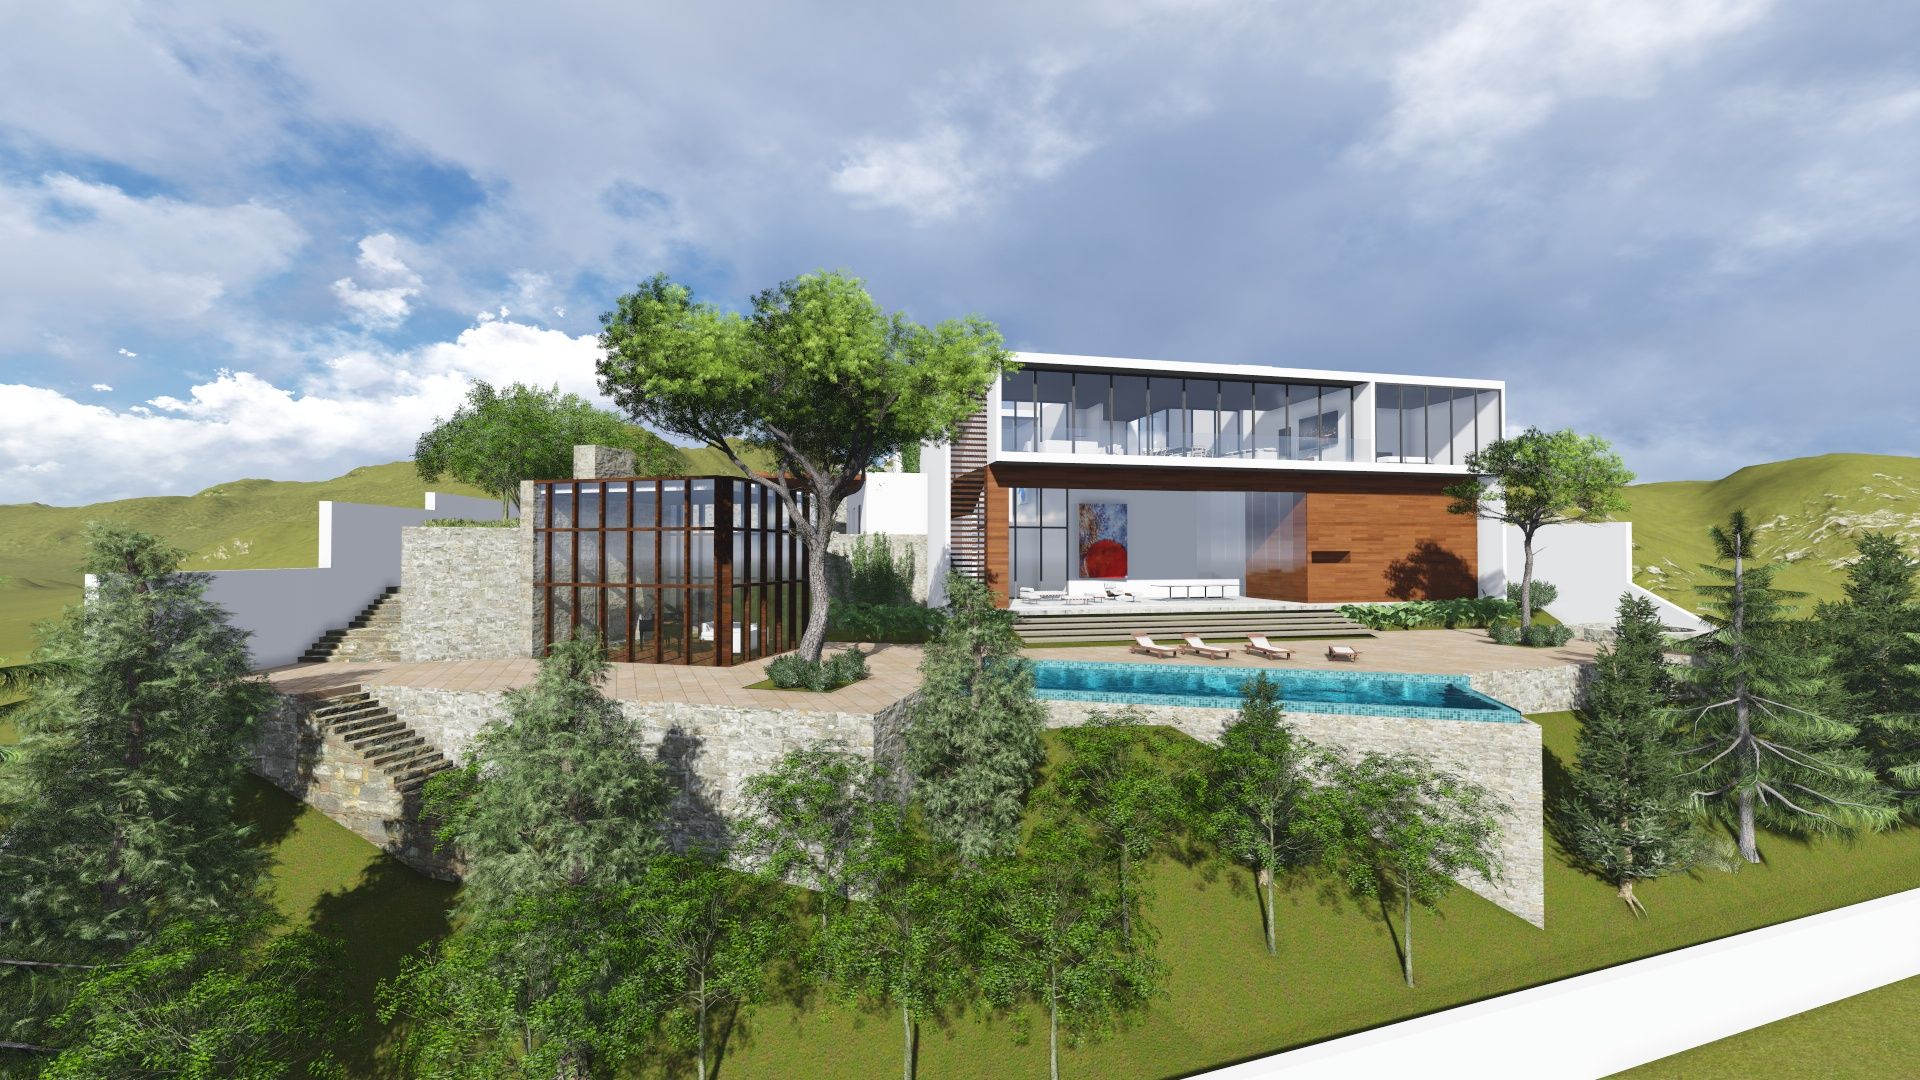 Residencia en Bosque Centinela, unounoarquitectos unounoarquitectos Modern houses